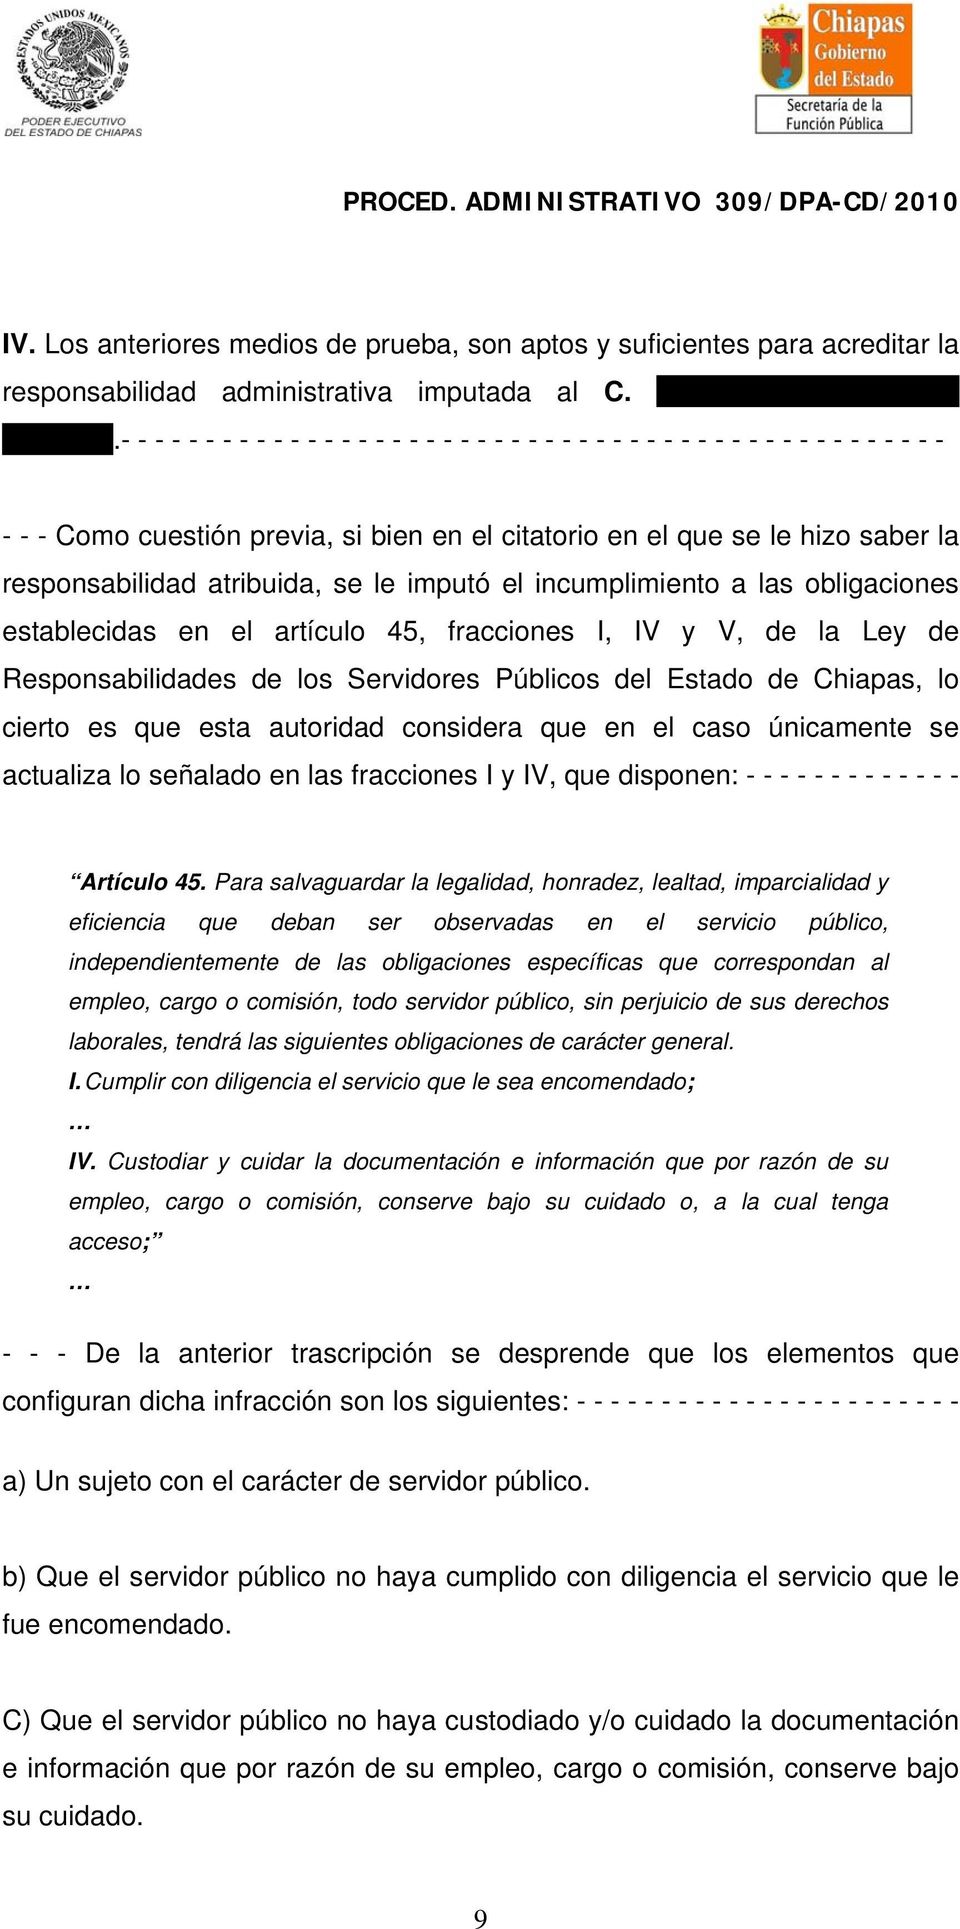 atribuida, se le imputó el incumplimiento a las obligaciones establecidas en el artículo 45, fracciones I, IV y V, de la Ley de Responsabilidades de los Servidores Públicos del Estado de Chiapas, lo